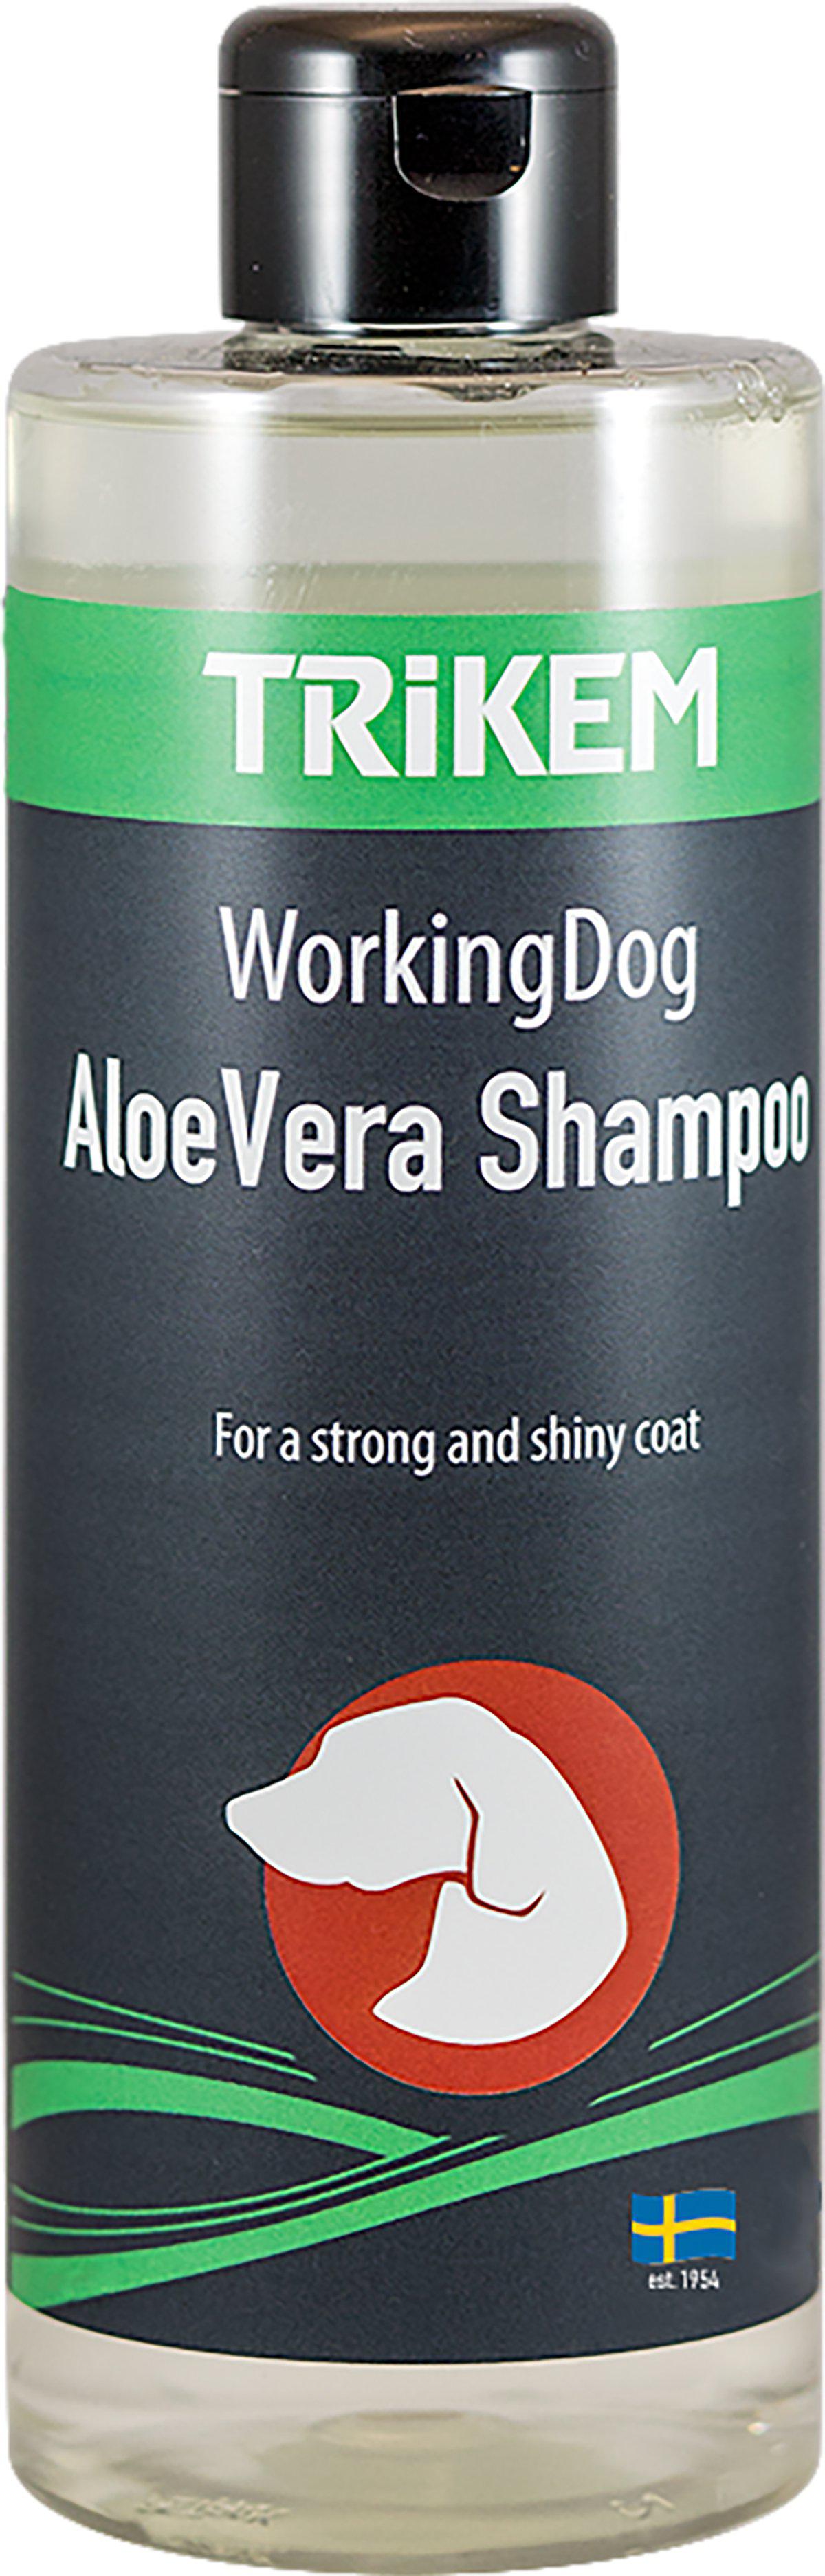 TRIKEM - Aloe Vera Shampoo 500Ml - (721.2106)